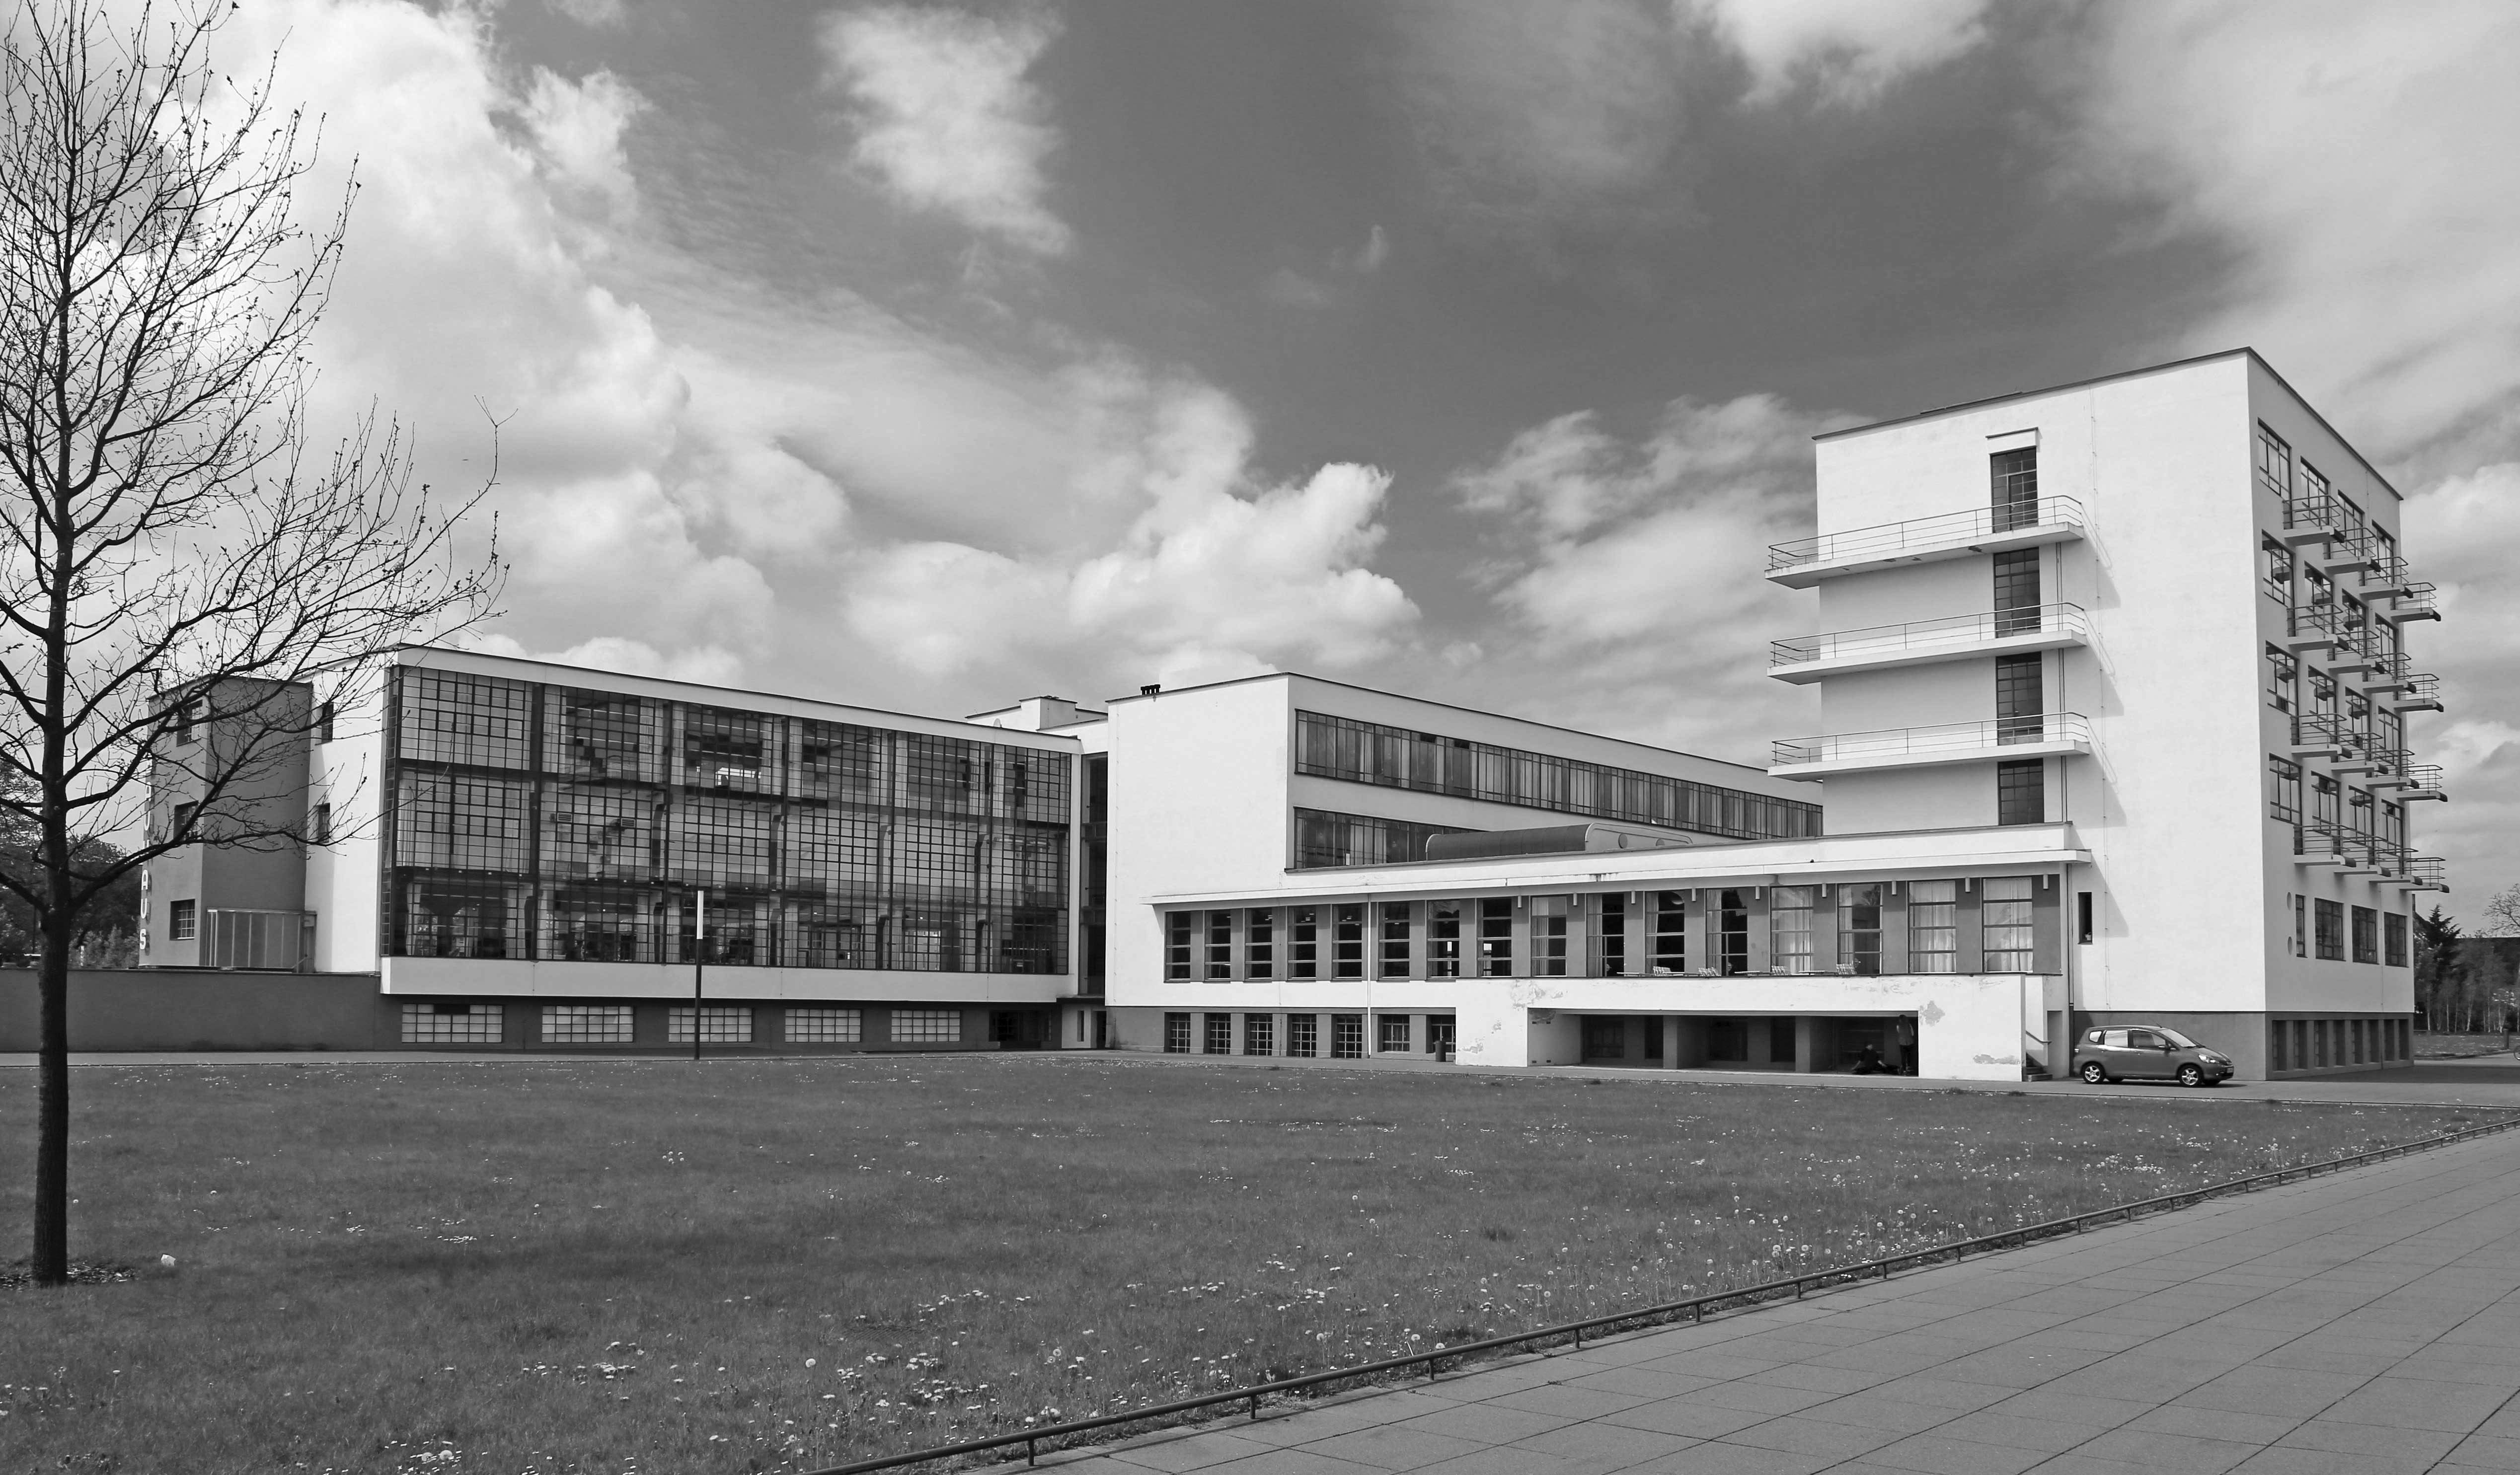 Доклад: Bauhaus